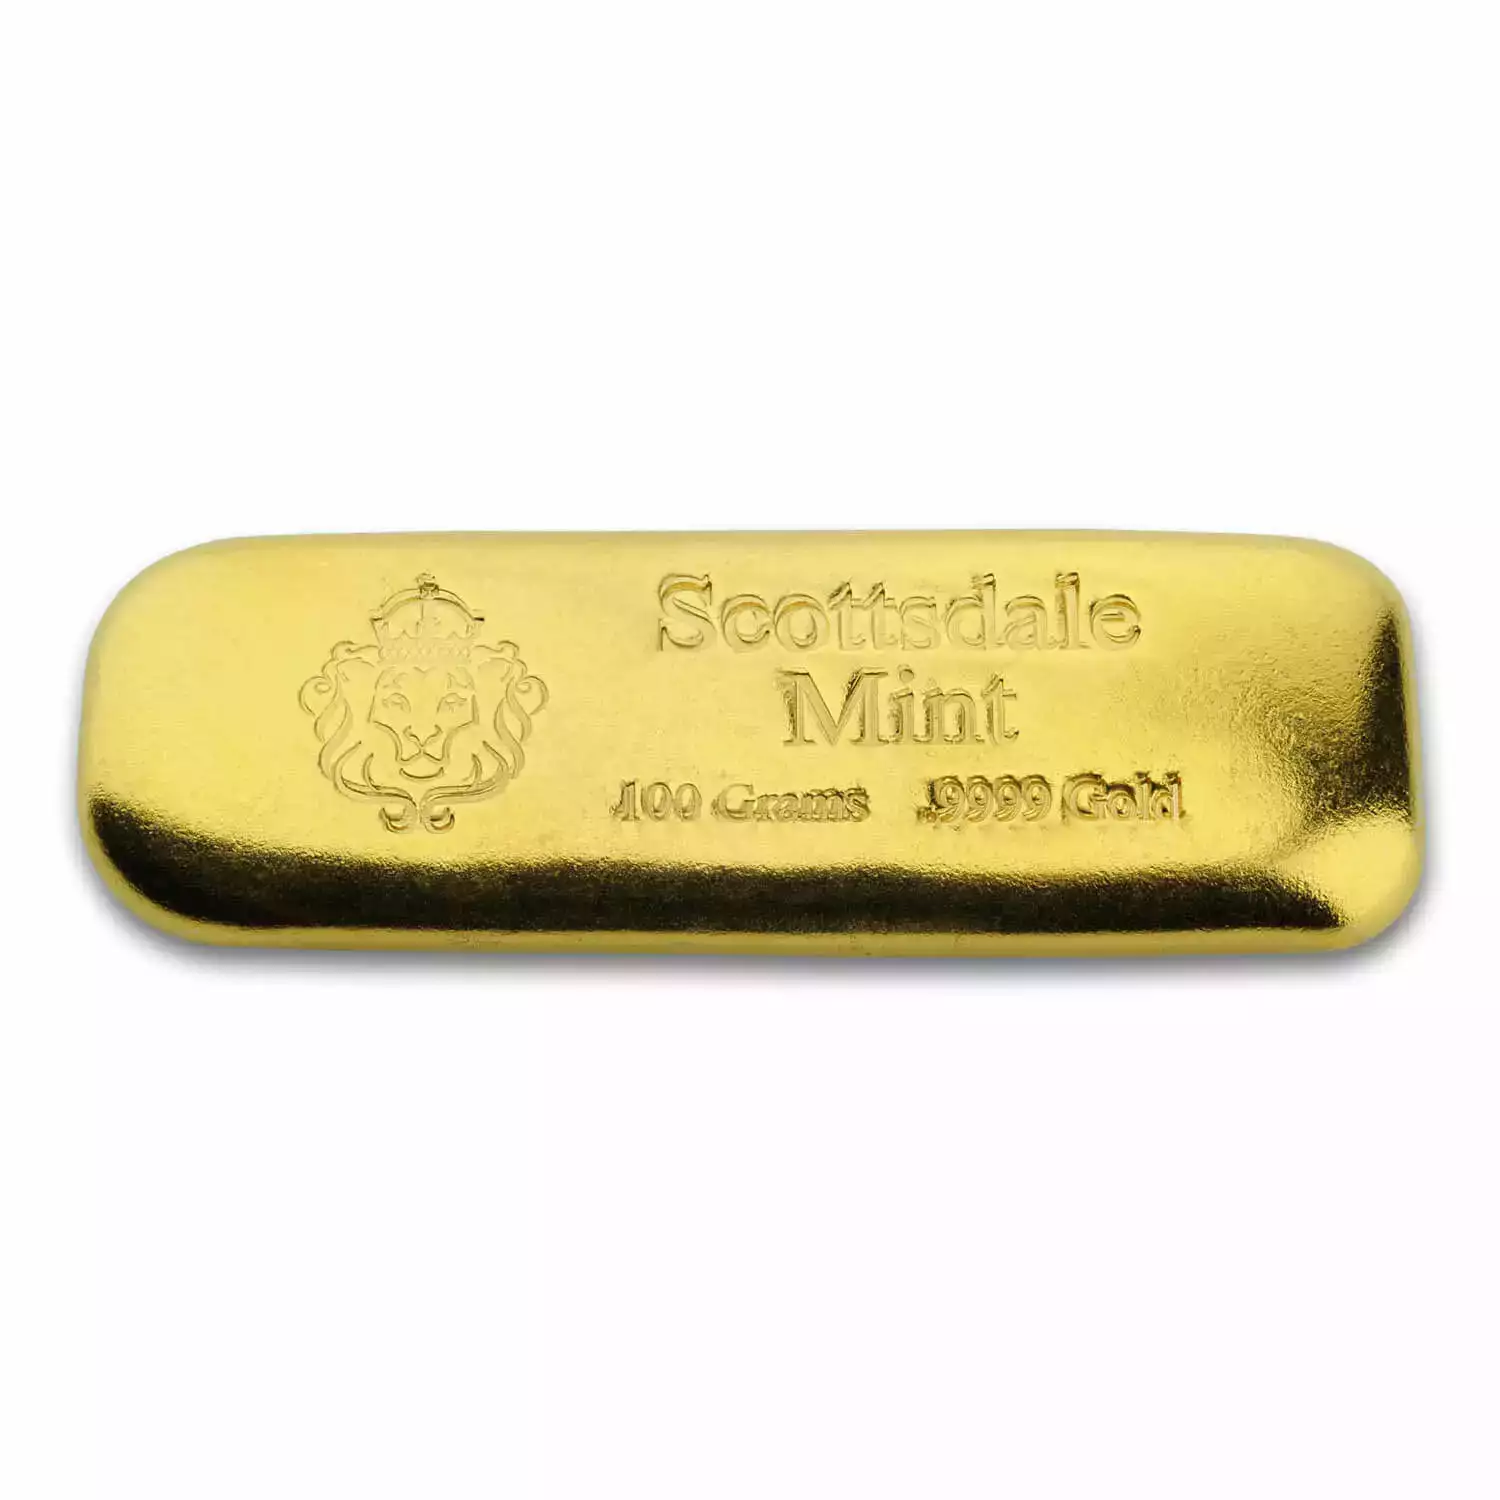 Scottsdale Mint 100gram Gold Lion Cast Bar (2)